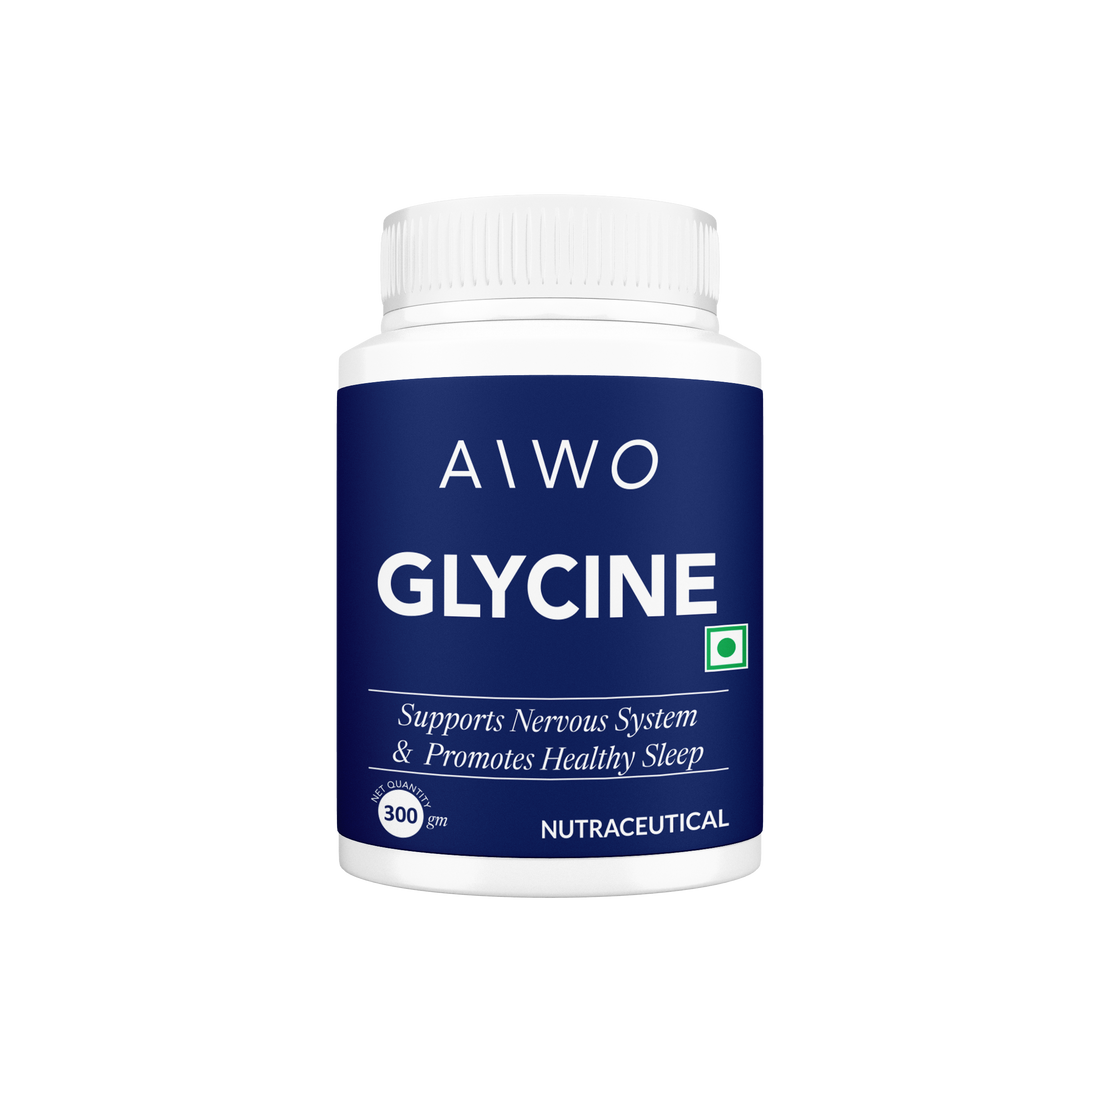 Aiwo Glycine 300gm